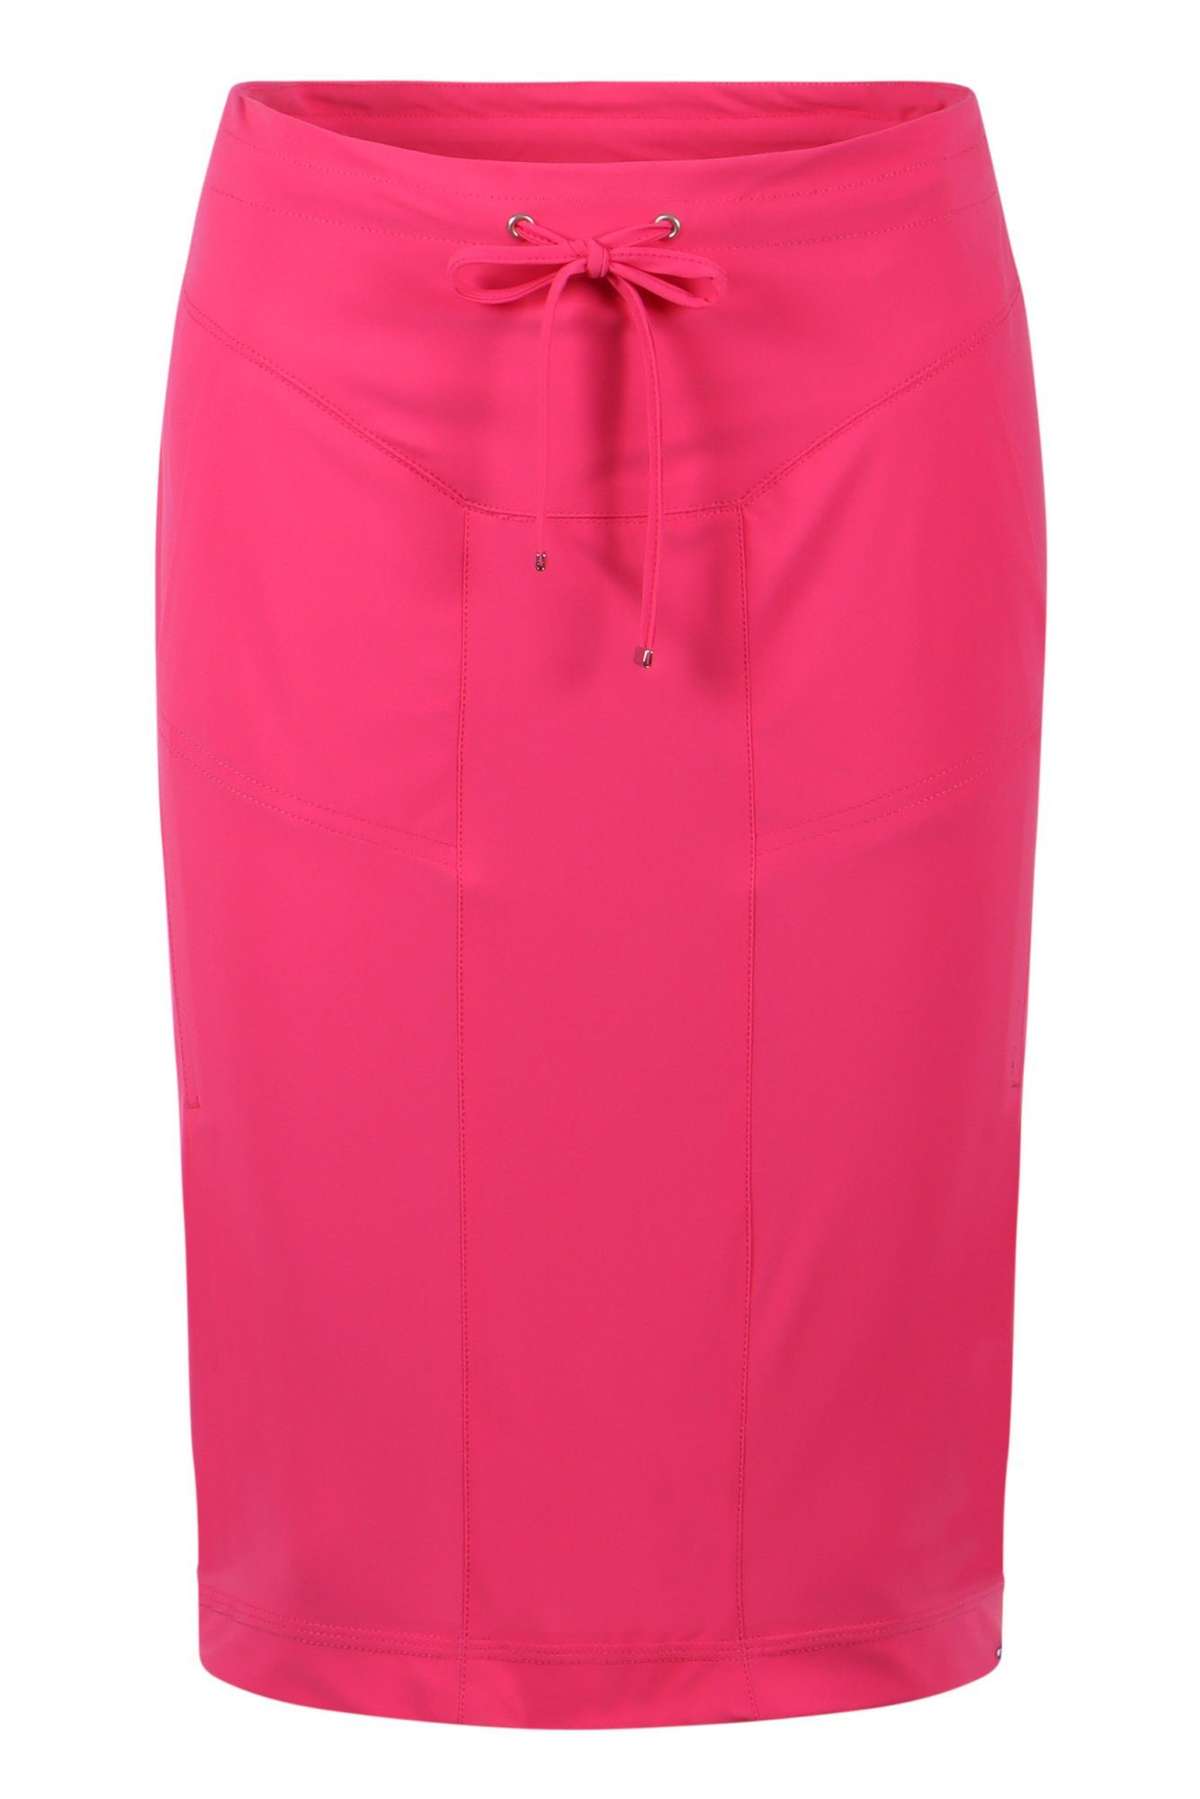 Летняя юбка-юбка Waris Crazy Pink